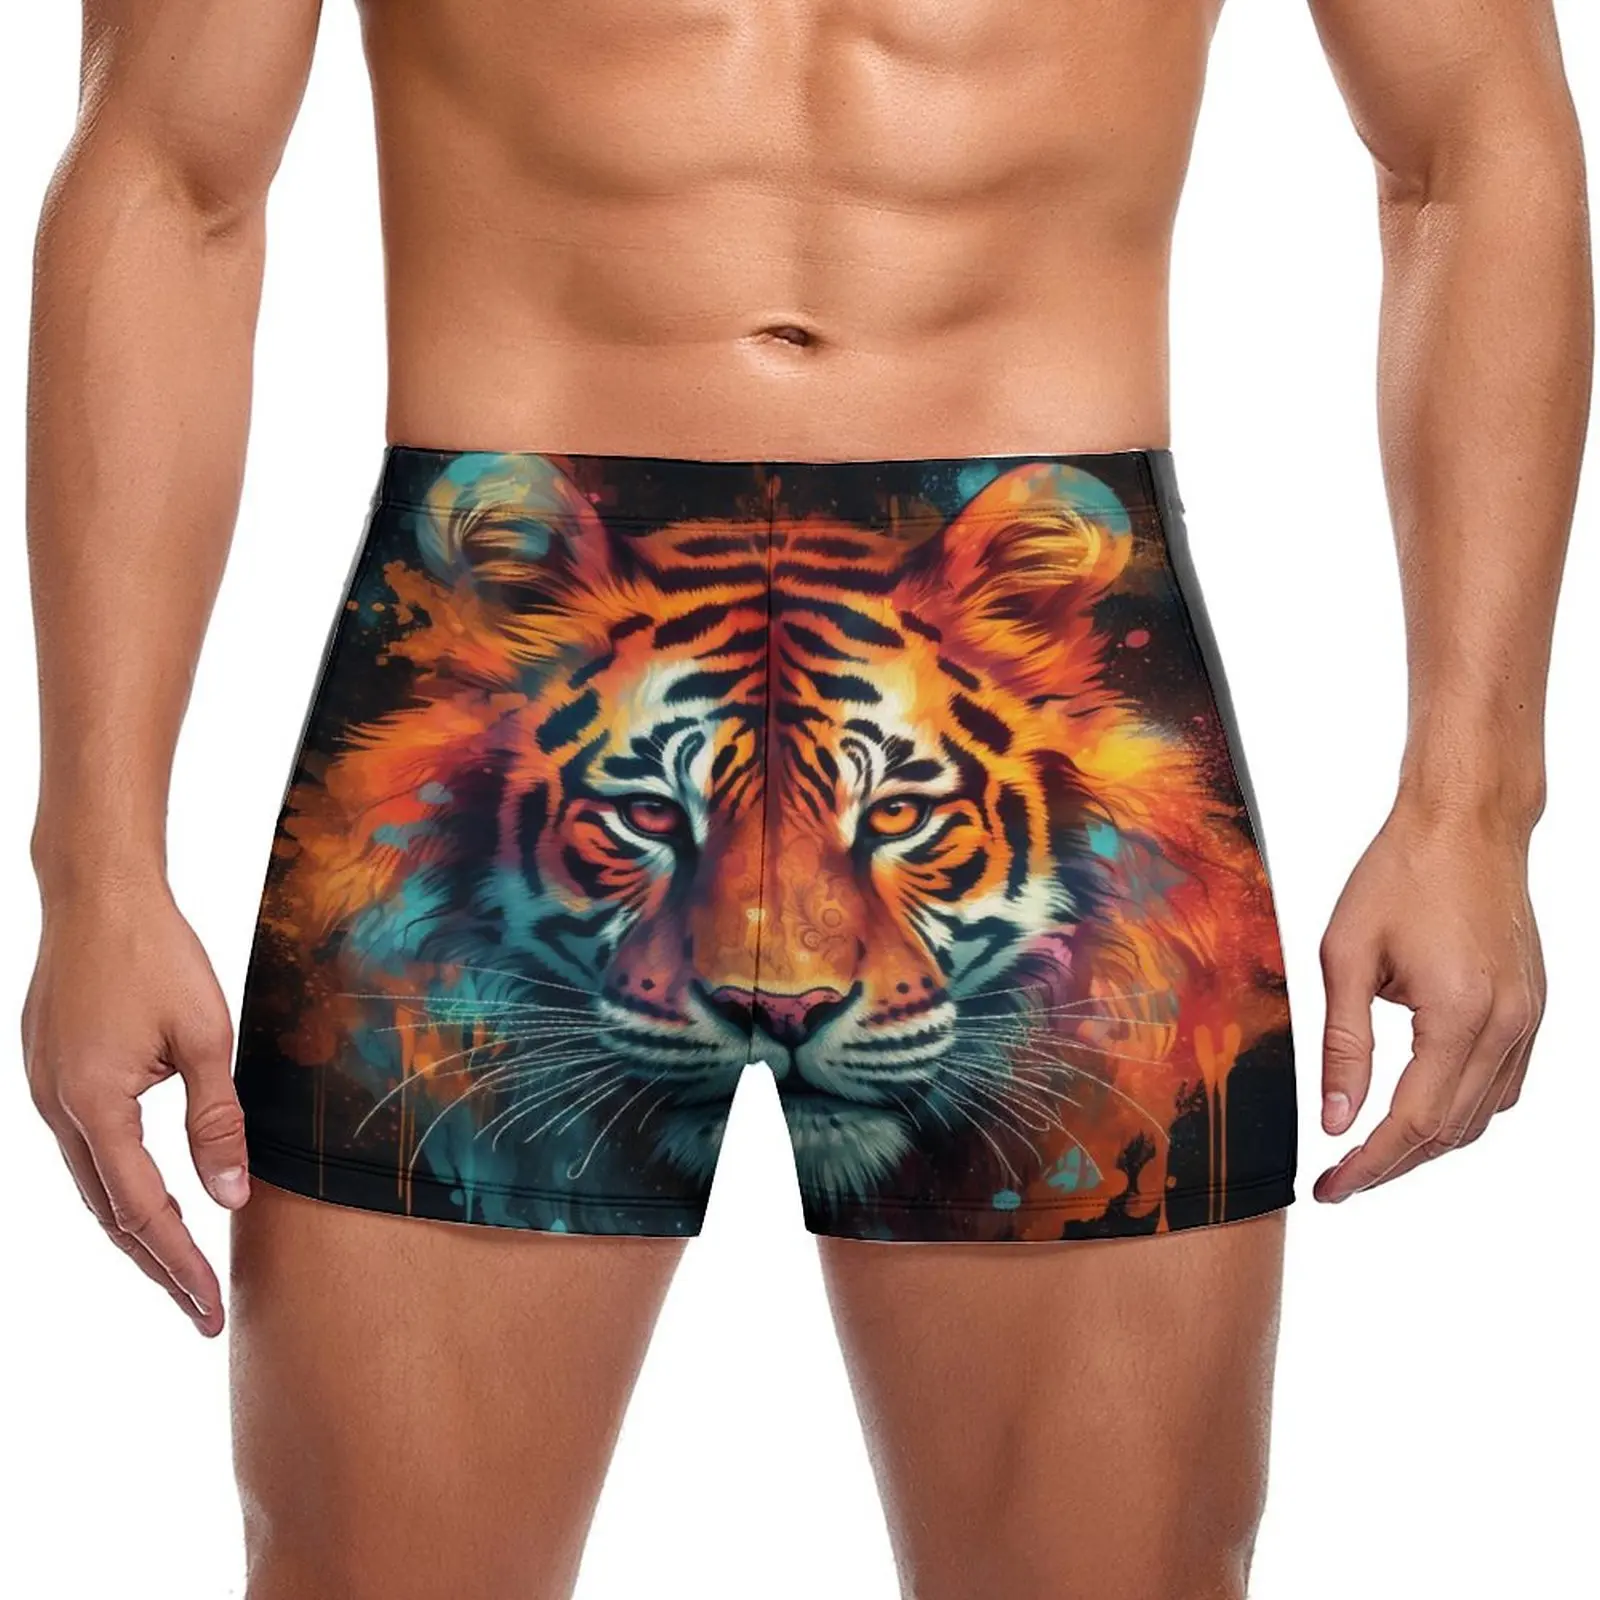 

Купальные трусы с тигром, эластичные боксеры для плавания с увлекательным изображением головы животного, тренировочный мужской купальник с чашками пуш-ап